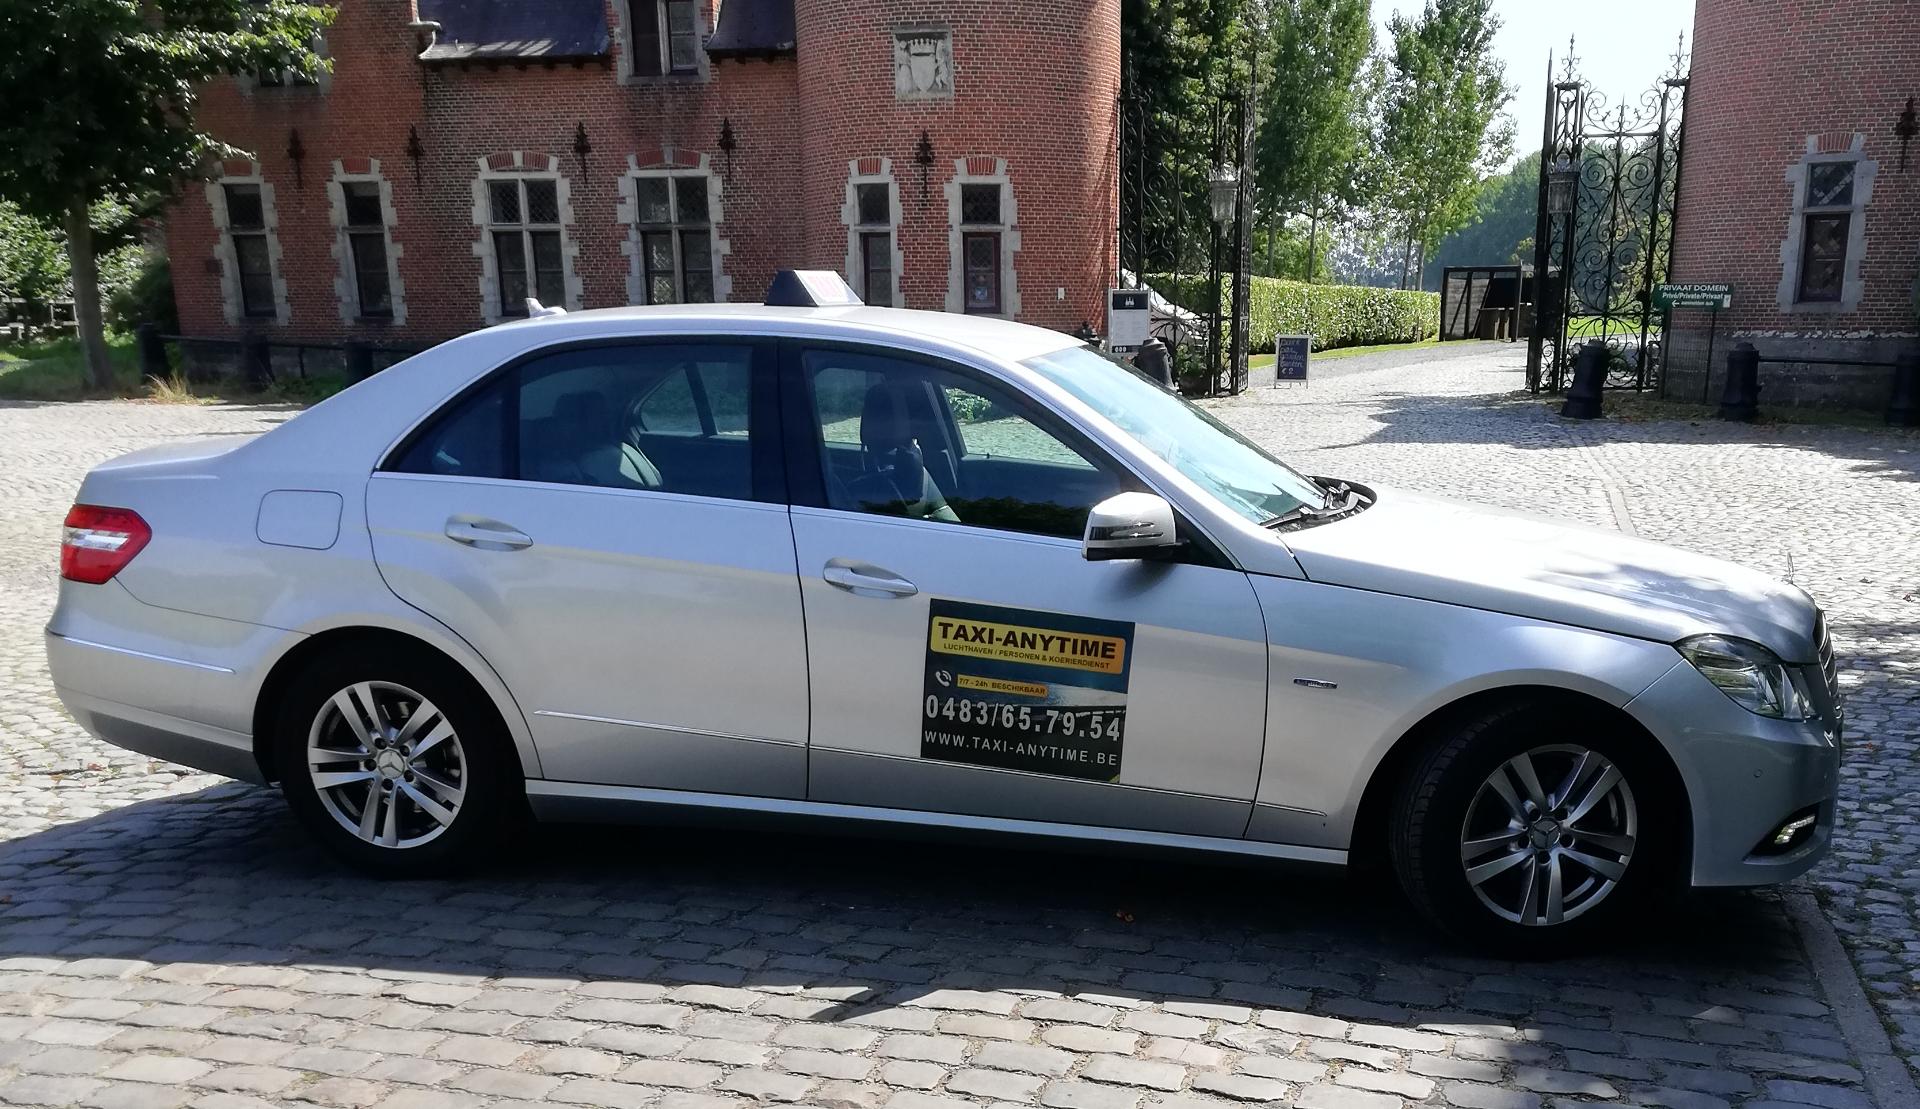 taxibedrijven Bredene Taxi Anytime